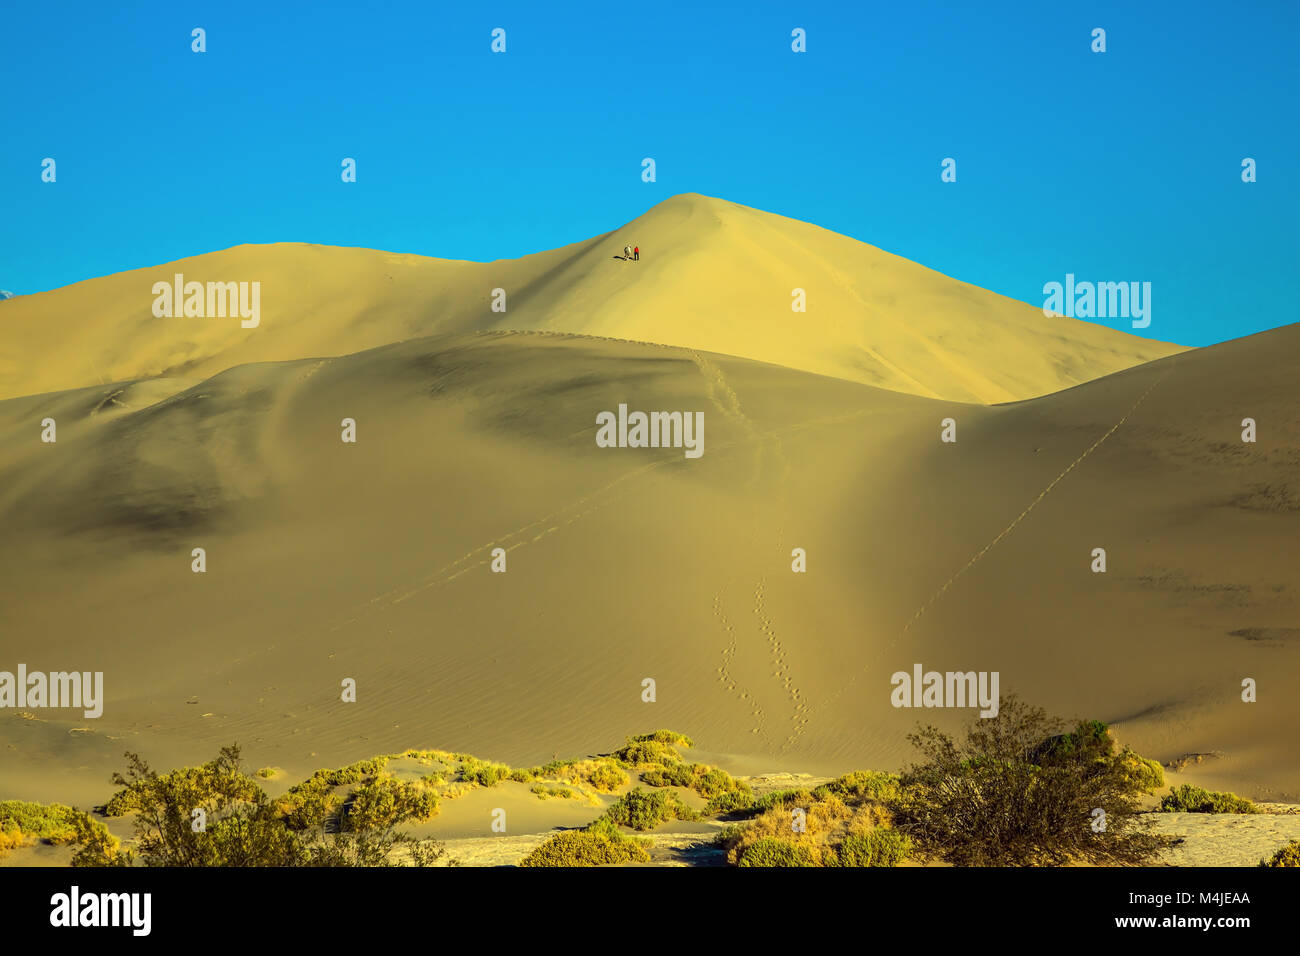 Les courbes douces de dunes de sable jaune Banque D'Images